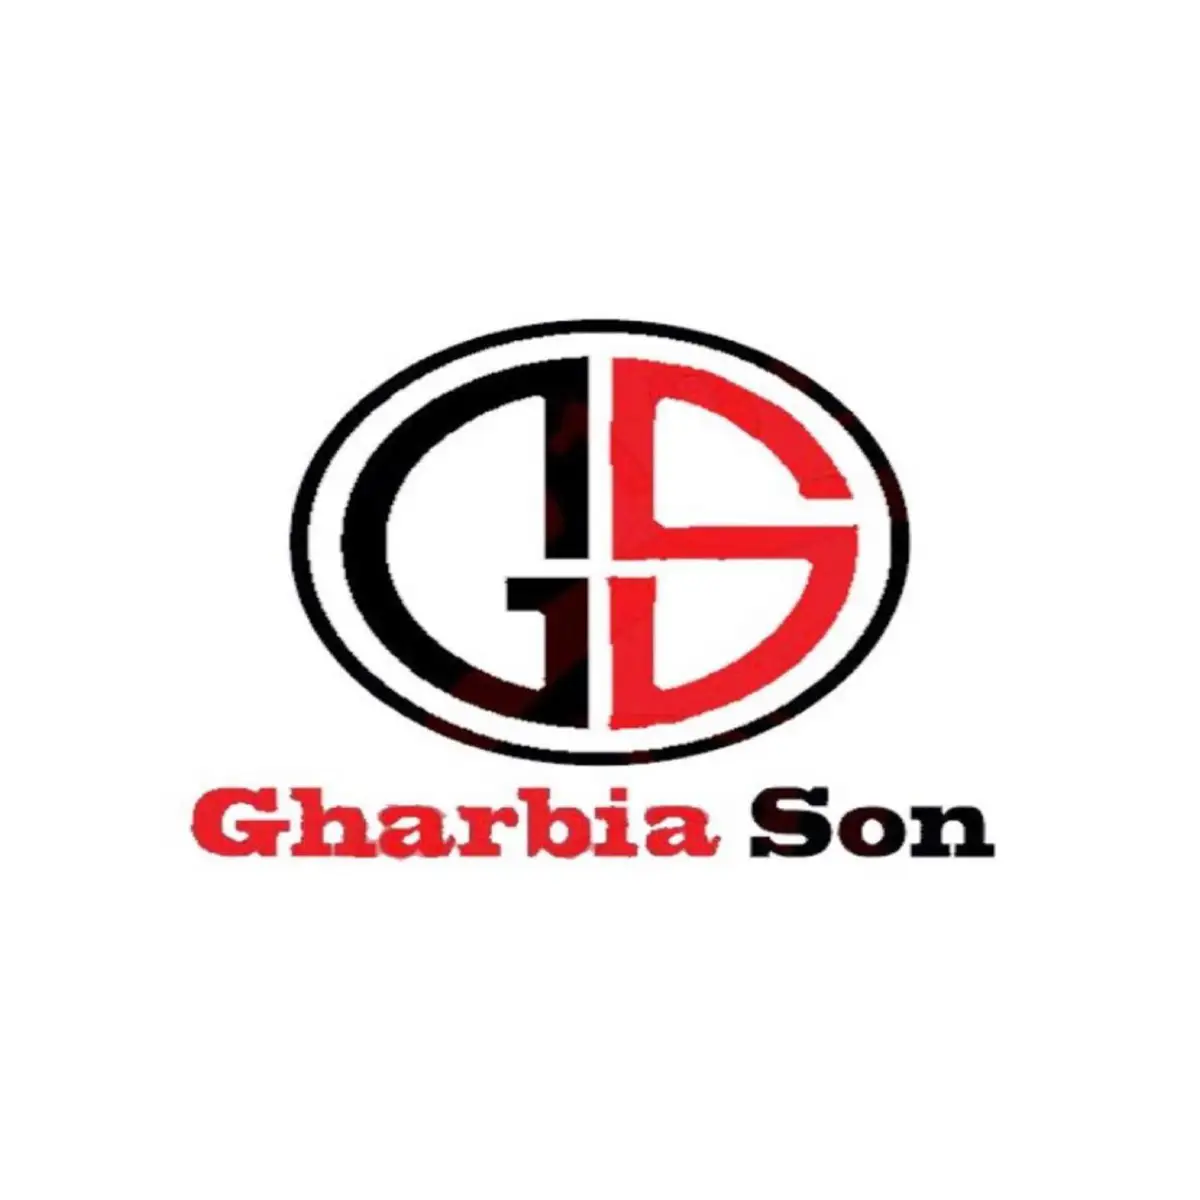 Gharbia son logo